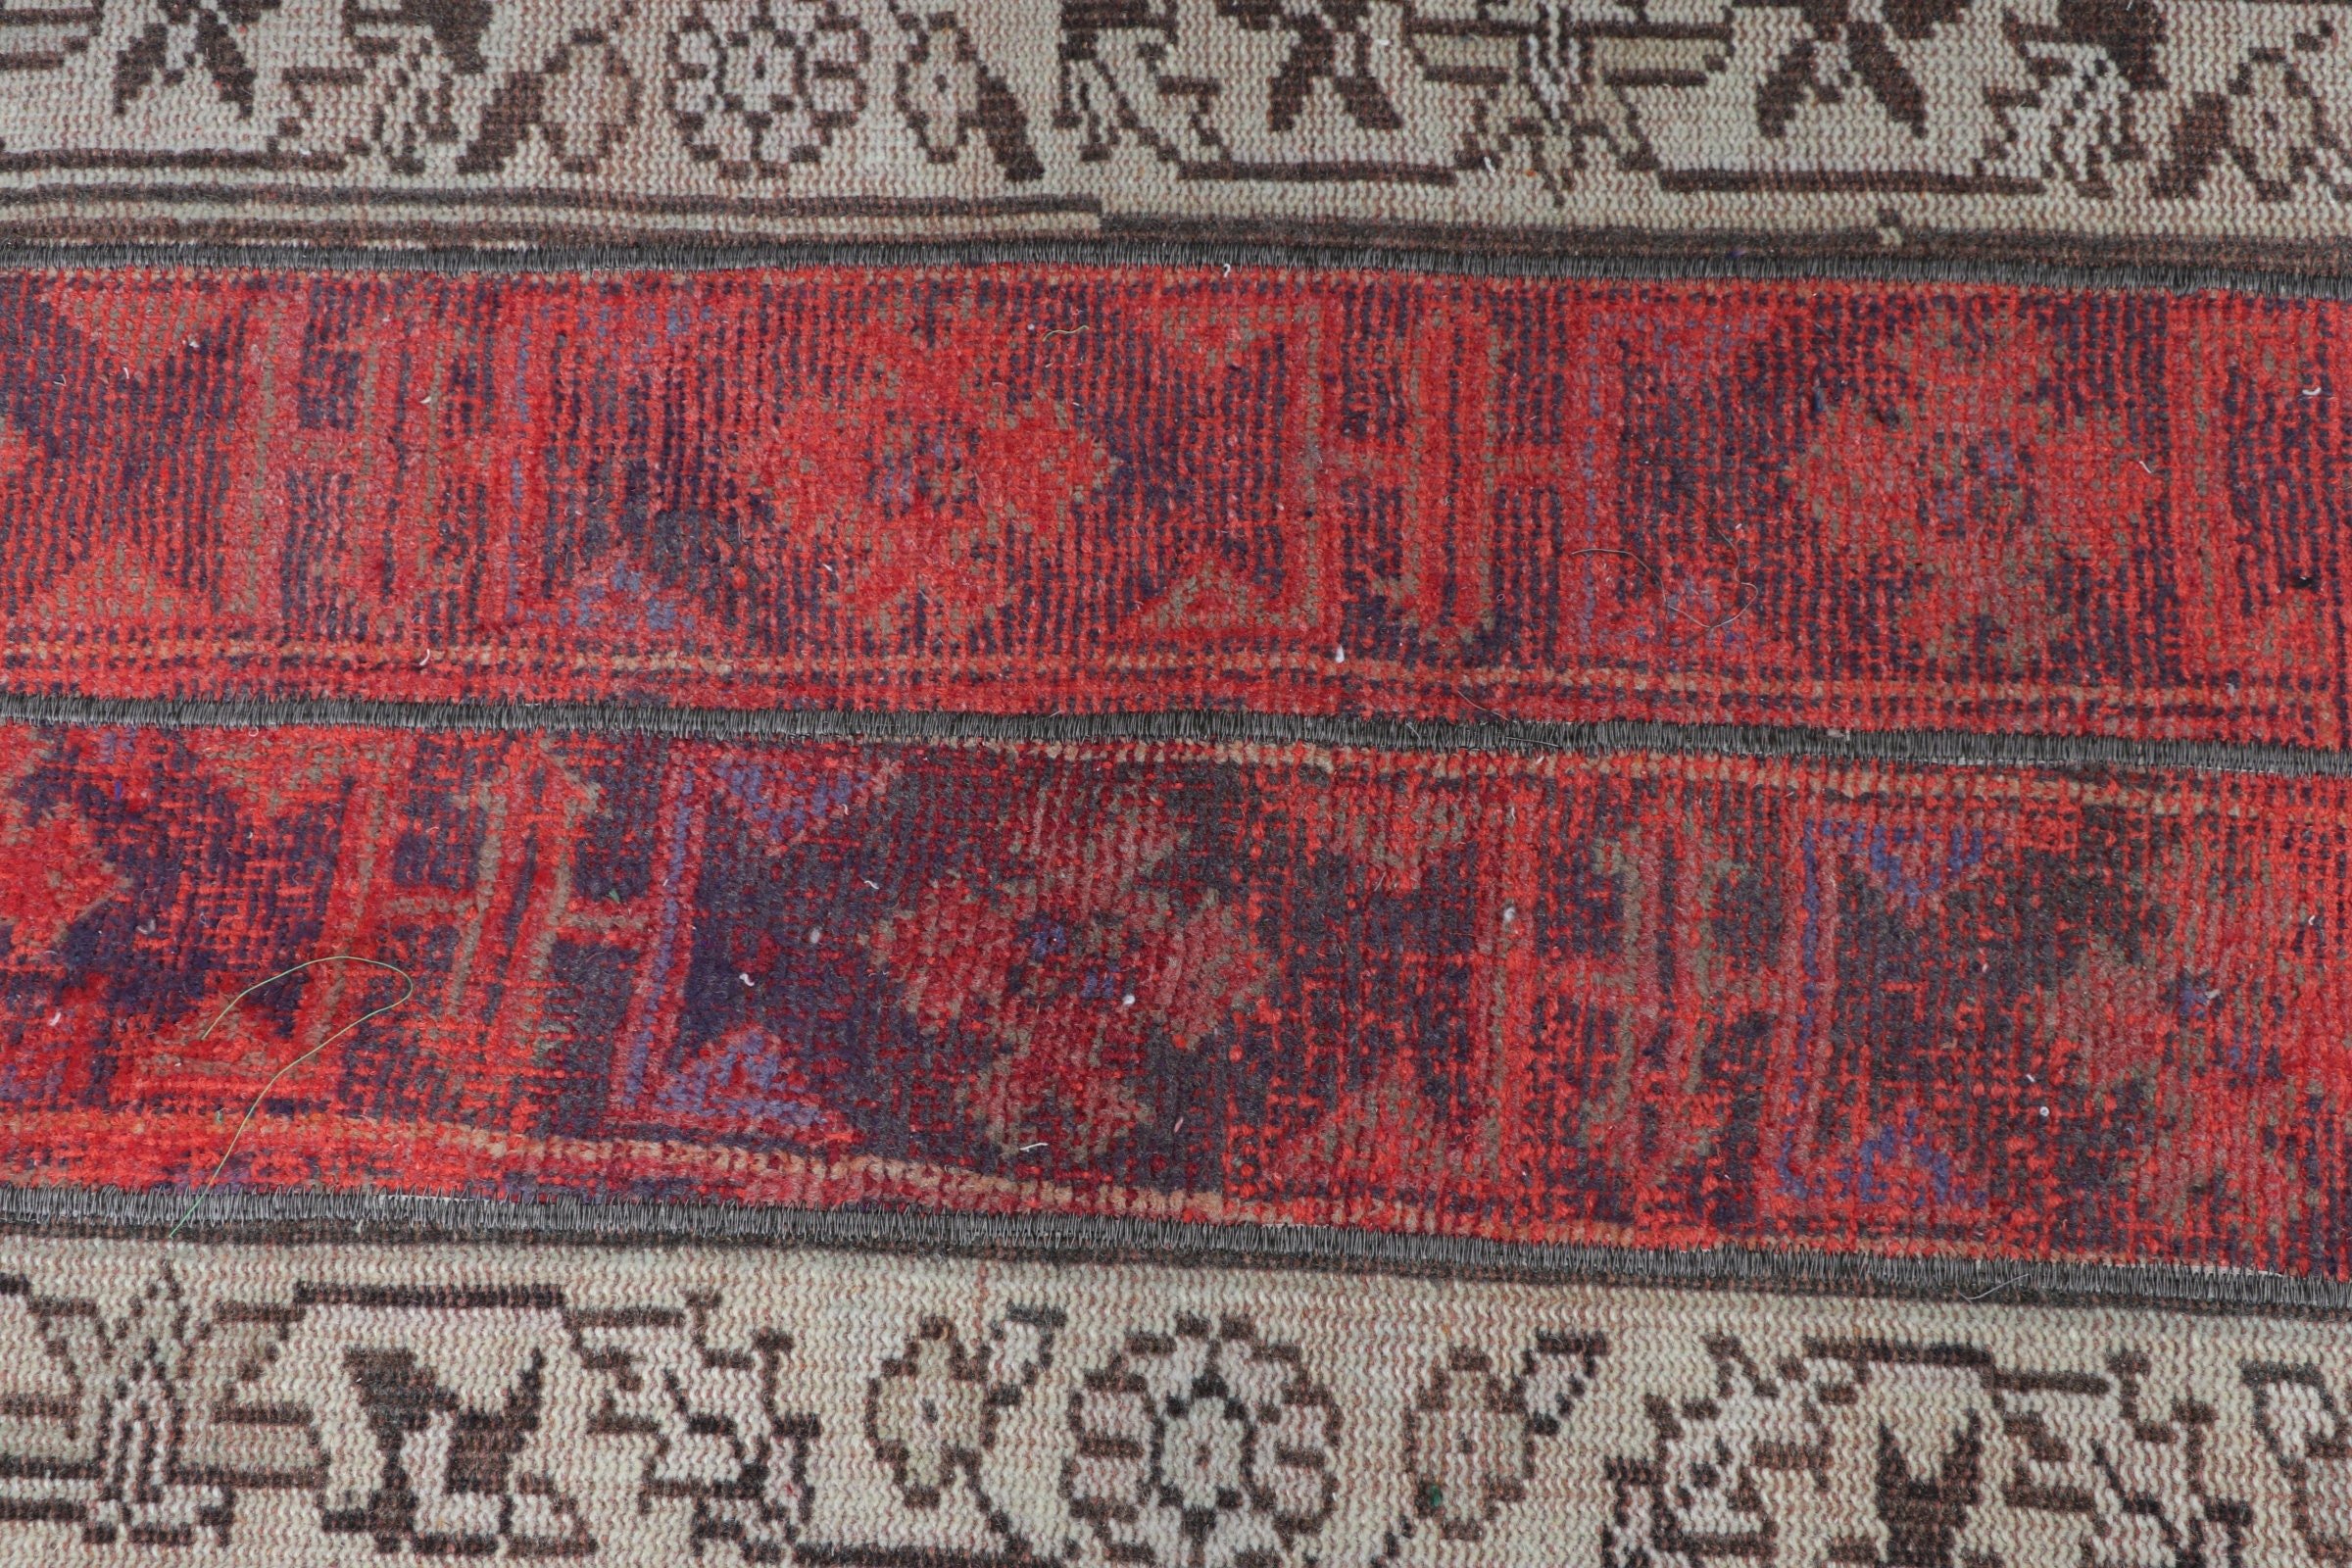 Türk Halısı, Kırmızı 2.3x3.7 ft Küçük Halı, Tribal Halı, Antika Halı, Vintage Halı, Duvara Asılı Halılar, Yatak Odası Halıları, Banyo Halısı